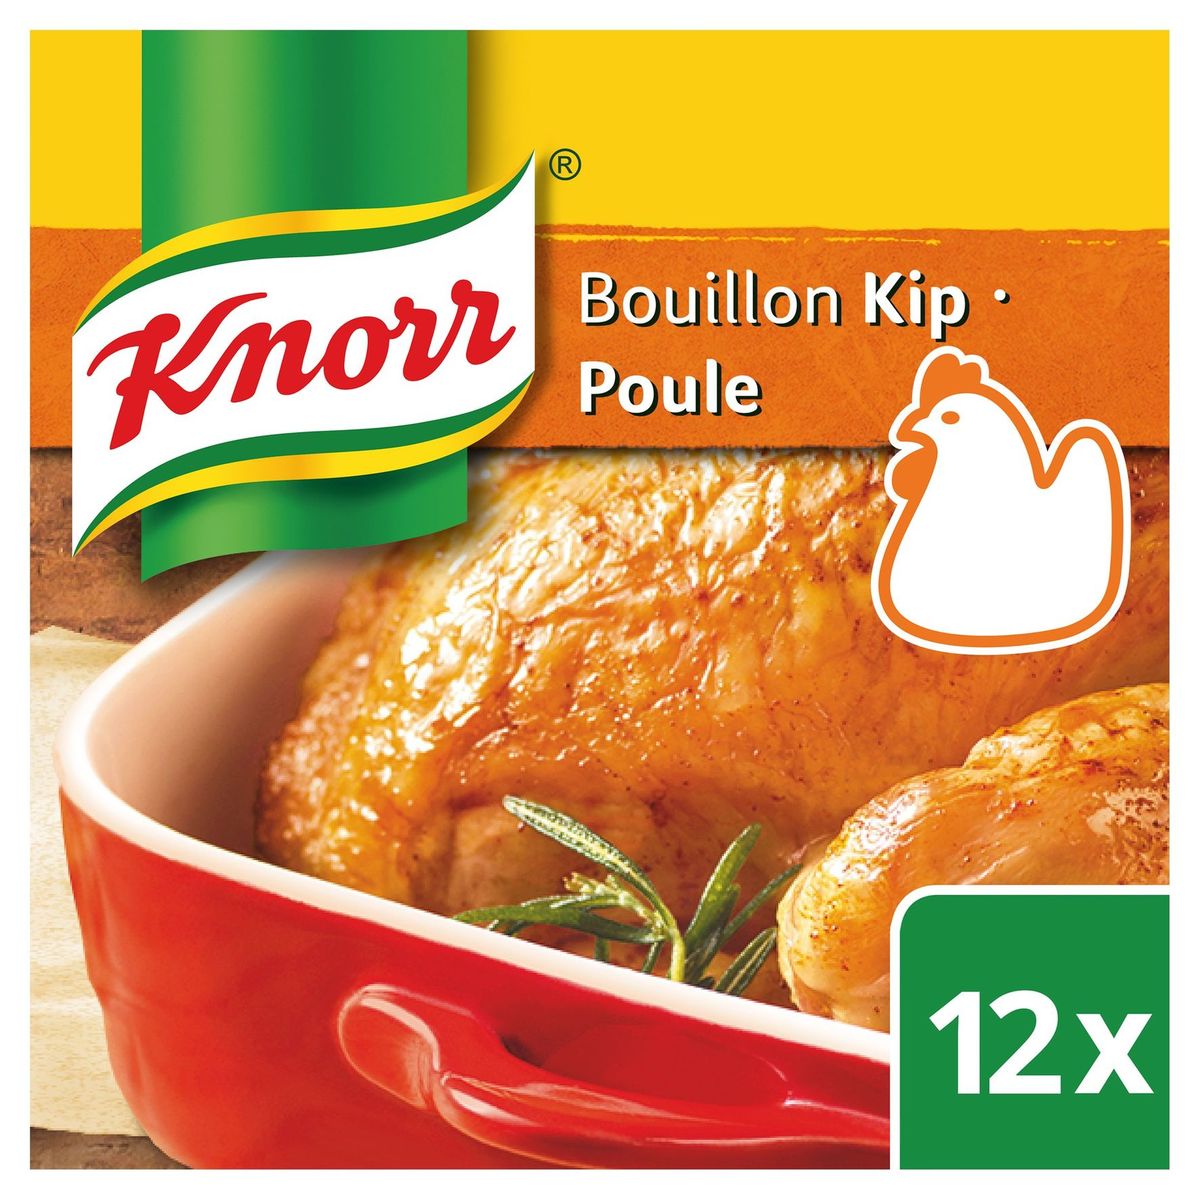 Knorr Original Bouillon Kip 12 Bouillonblokjes 12 x 10 g